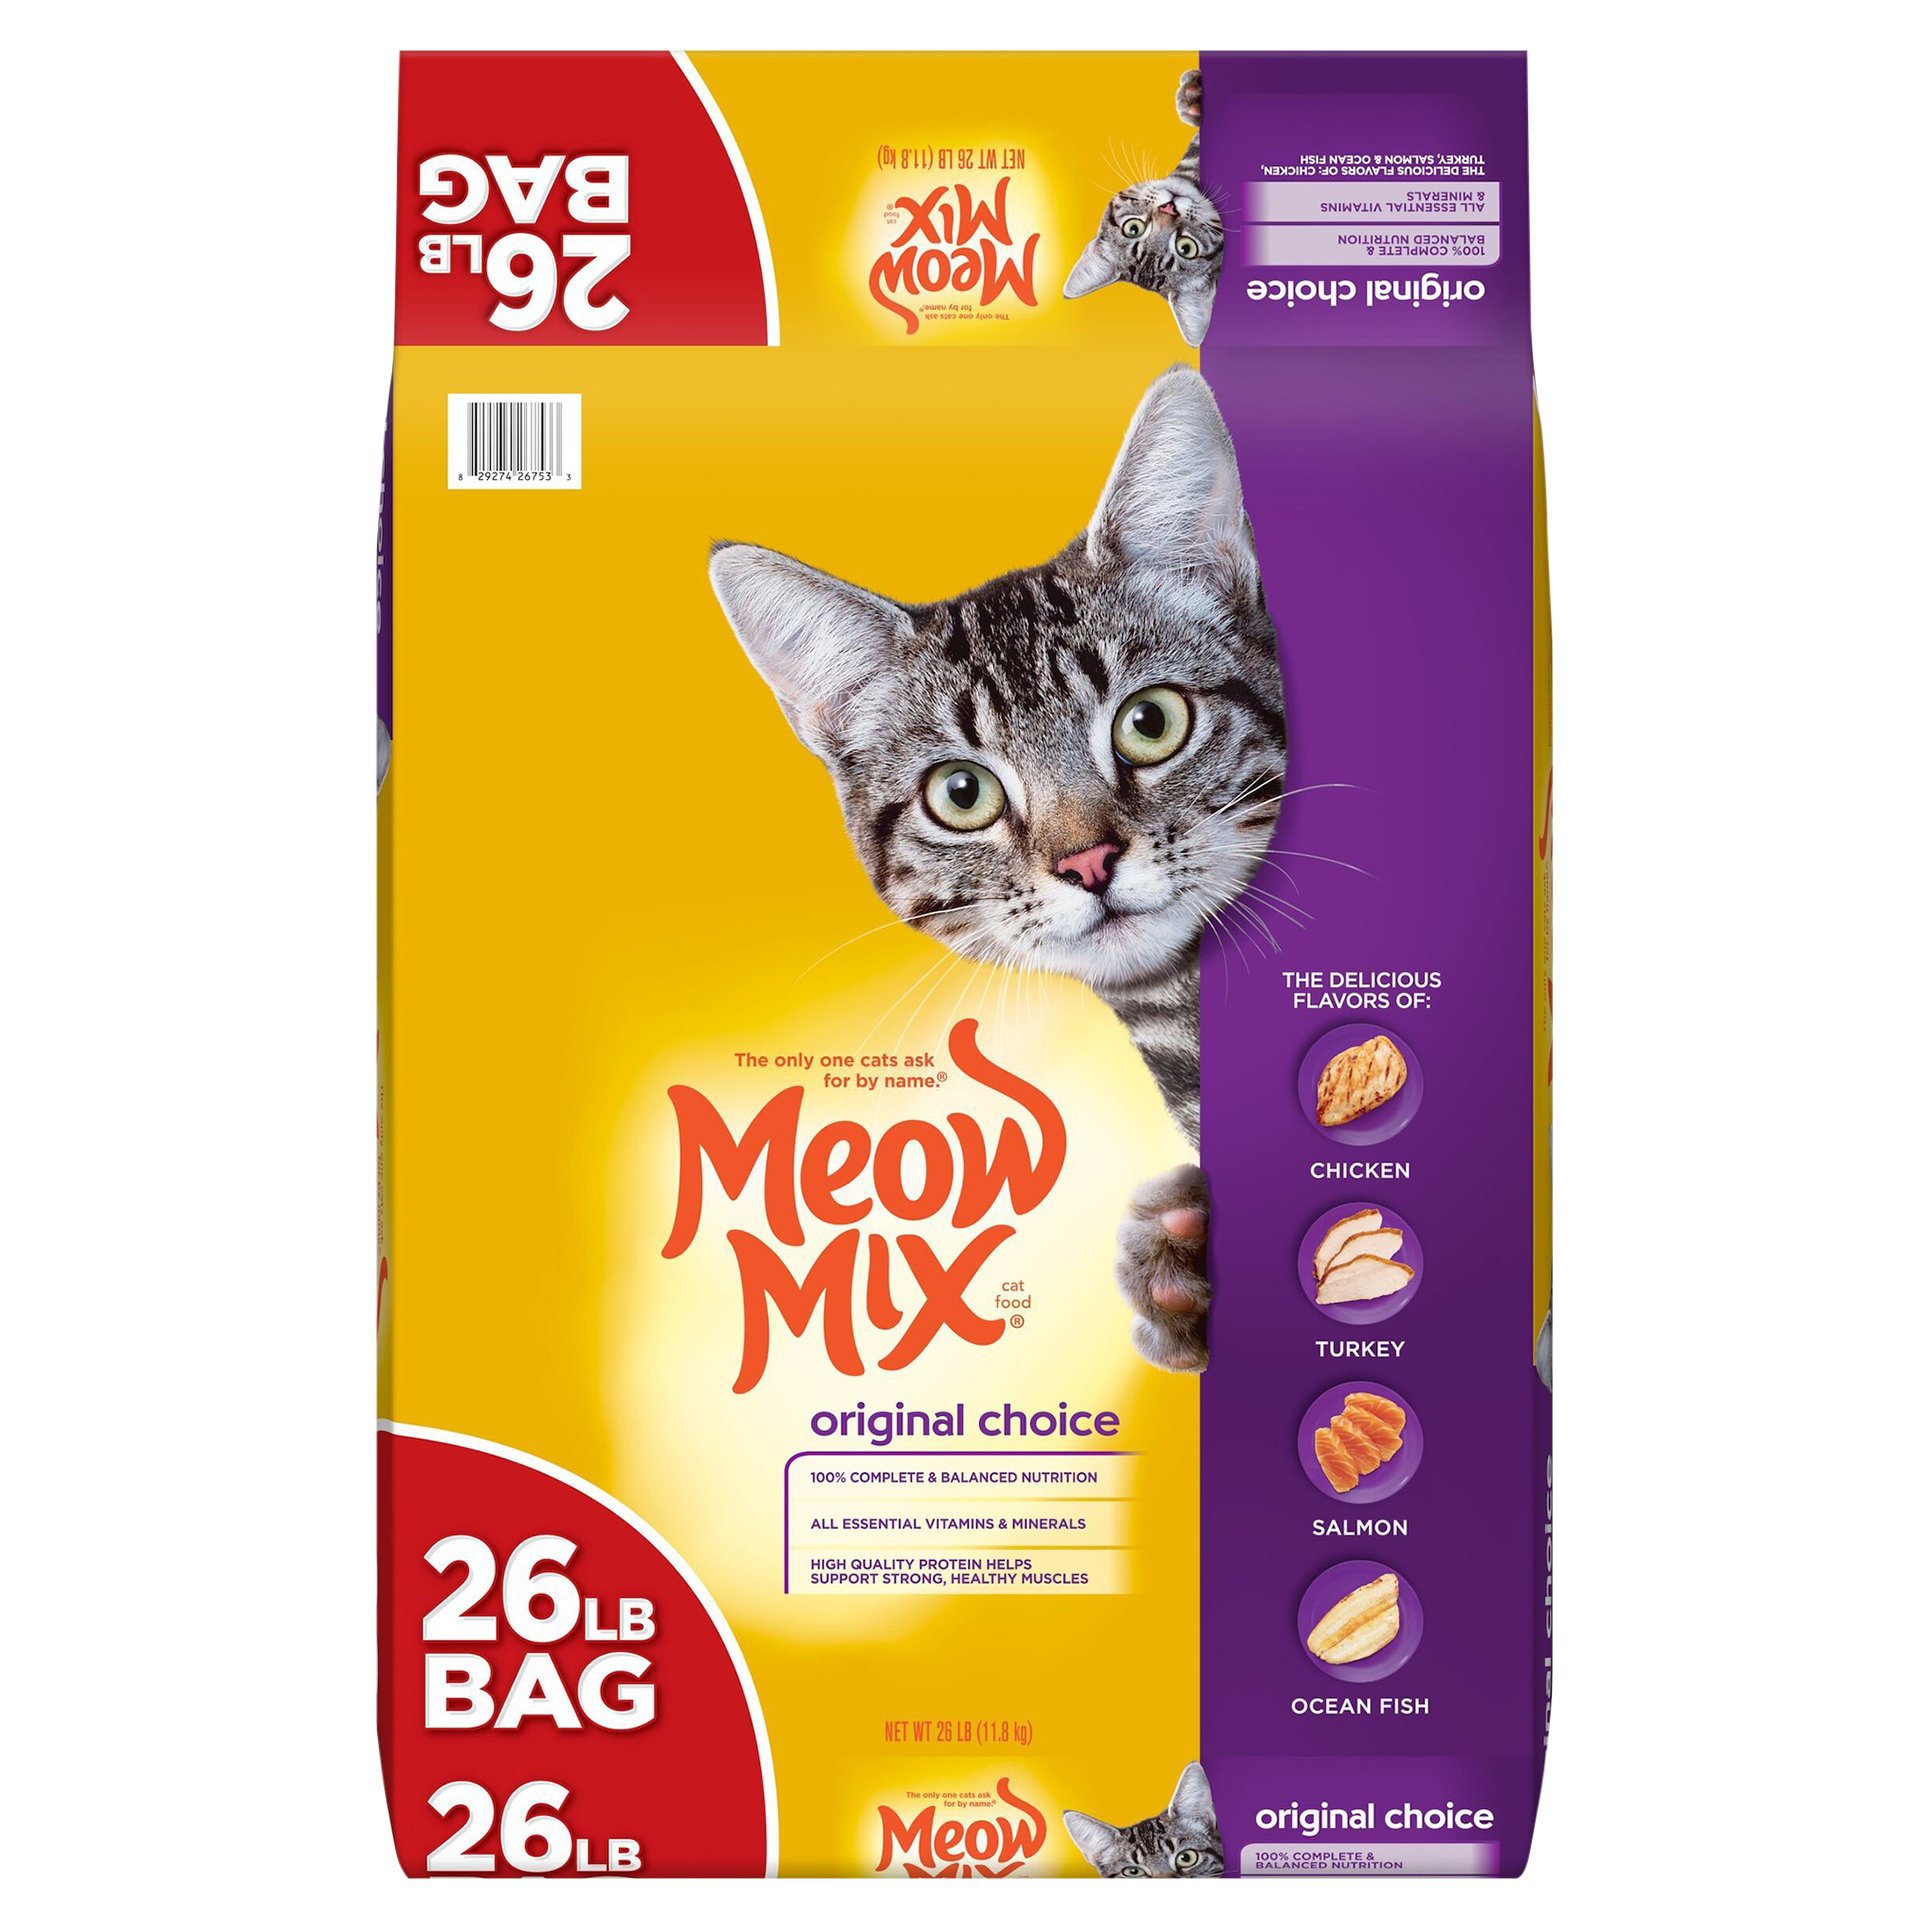 Meow Mix Original Choice Cat Food - Shop Cats at H-E-B